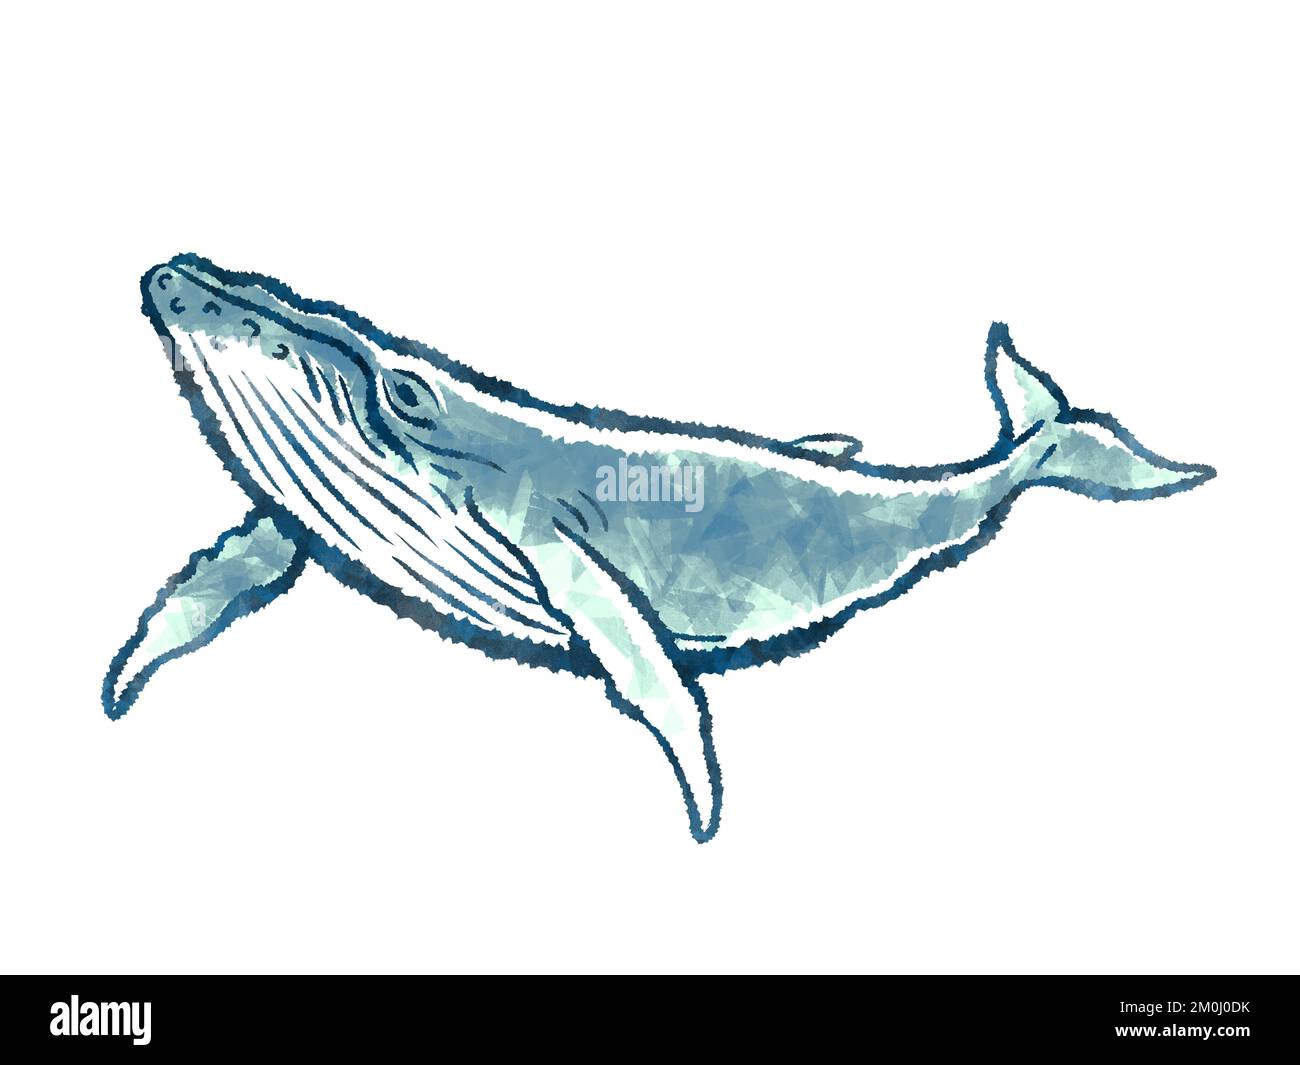 Ilustración de cuerpo entero de ballena aislada sobre fondo blanco Foto de stock